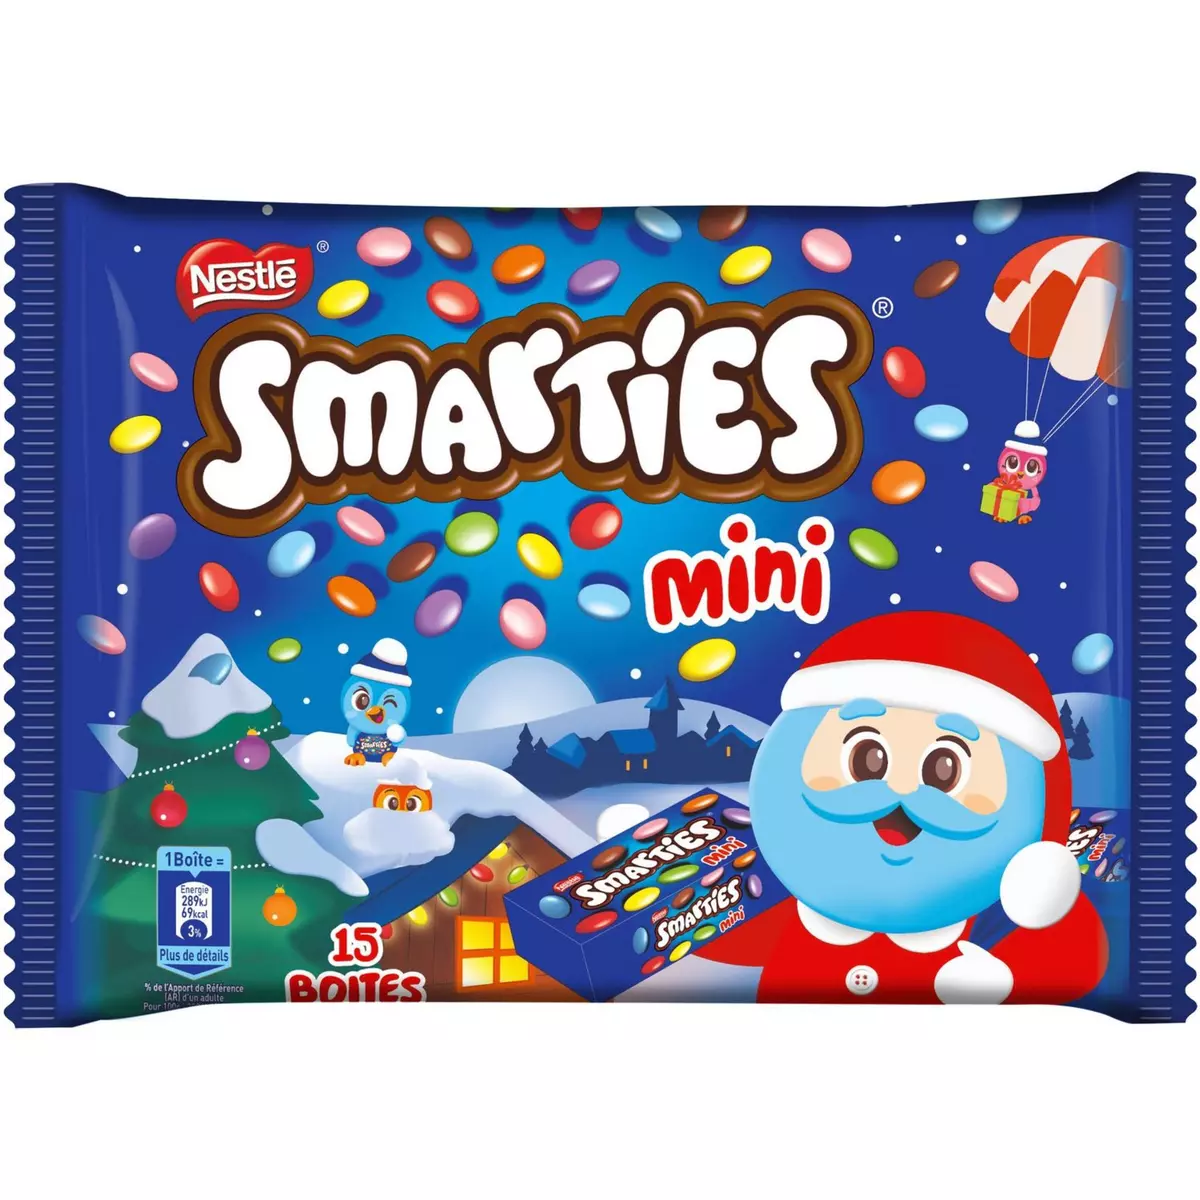 SMARTIES Nestlé smarties mini sachet 216g